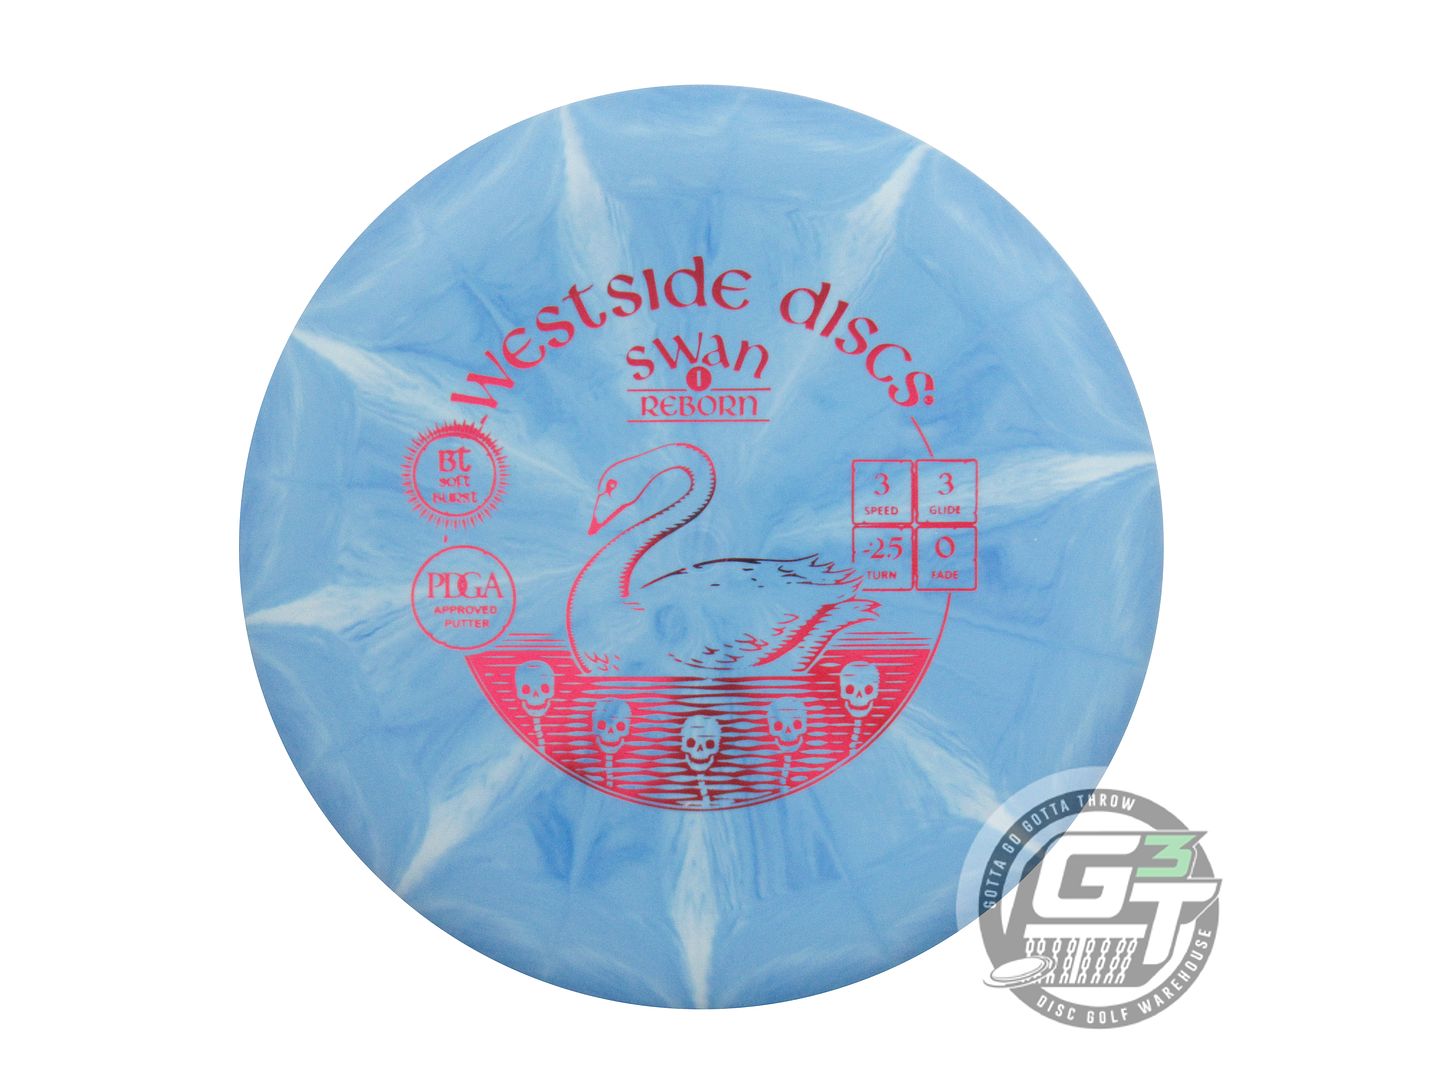 Westside BT Soft Burst Swan 1 Reborn Putter Golf Disc (Individually Listed)